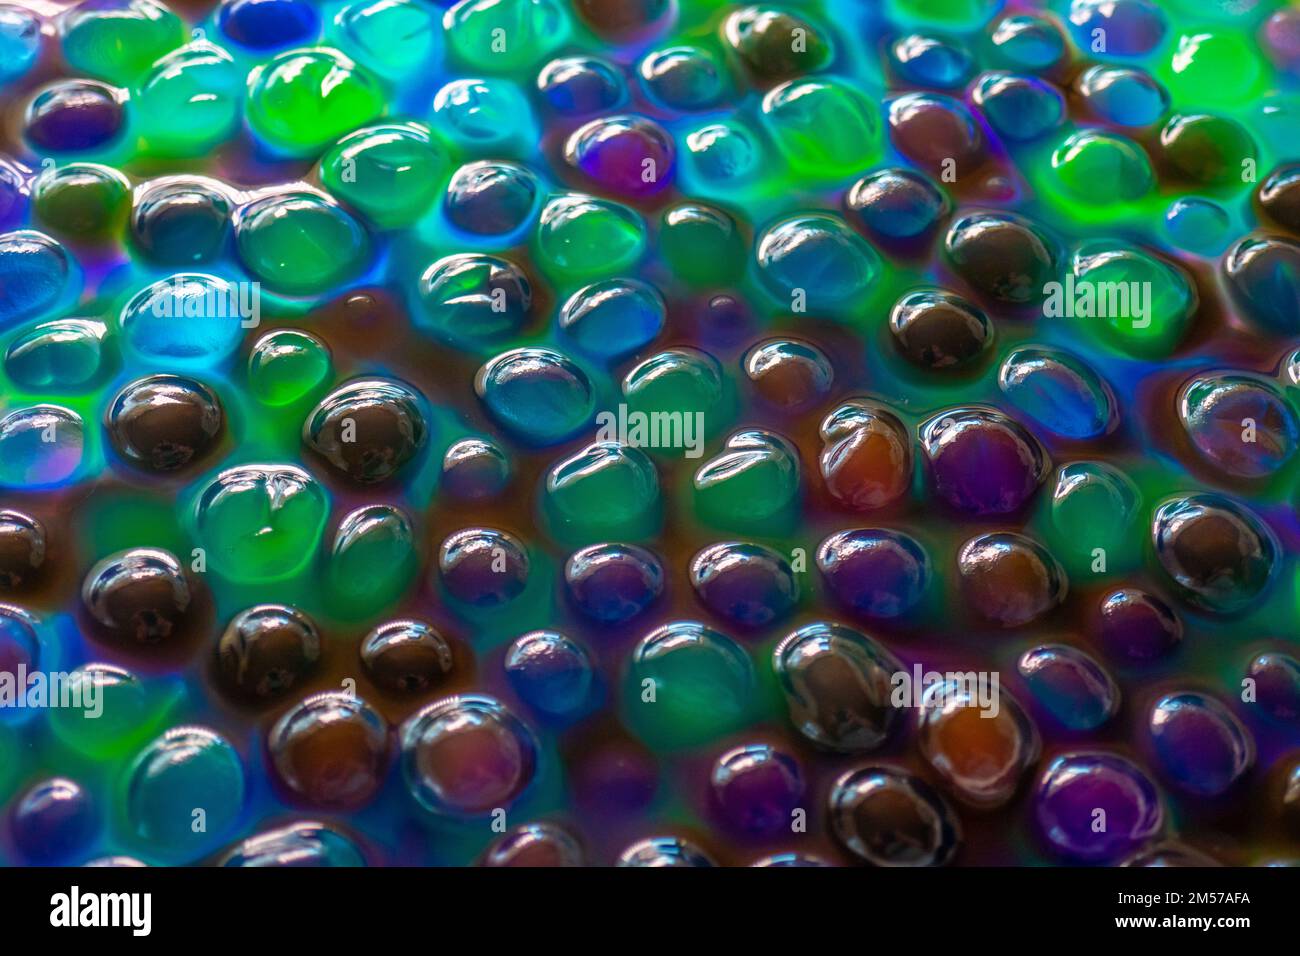 Orbiz-Bälle im Wasser. Hydrogel-Bälle für Dekoration, Gartenarbeit und Luftbefeuchter. Hintergrund in kühlen Farben. Mehrfarbige Orbiz-Textur. Stockfoto